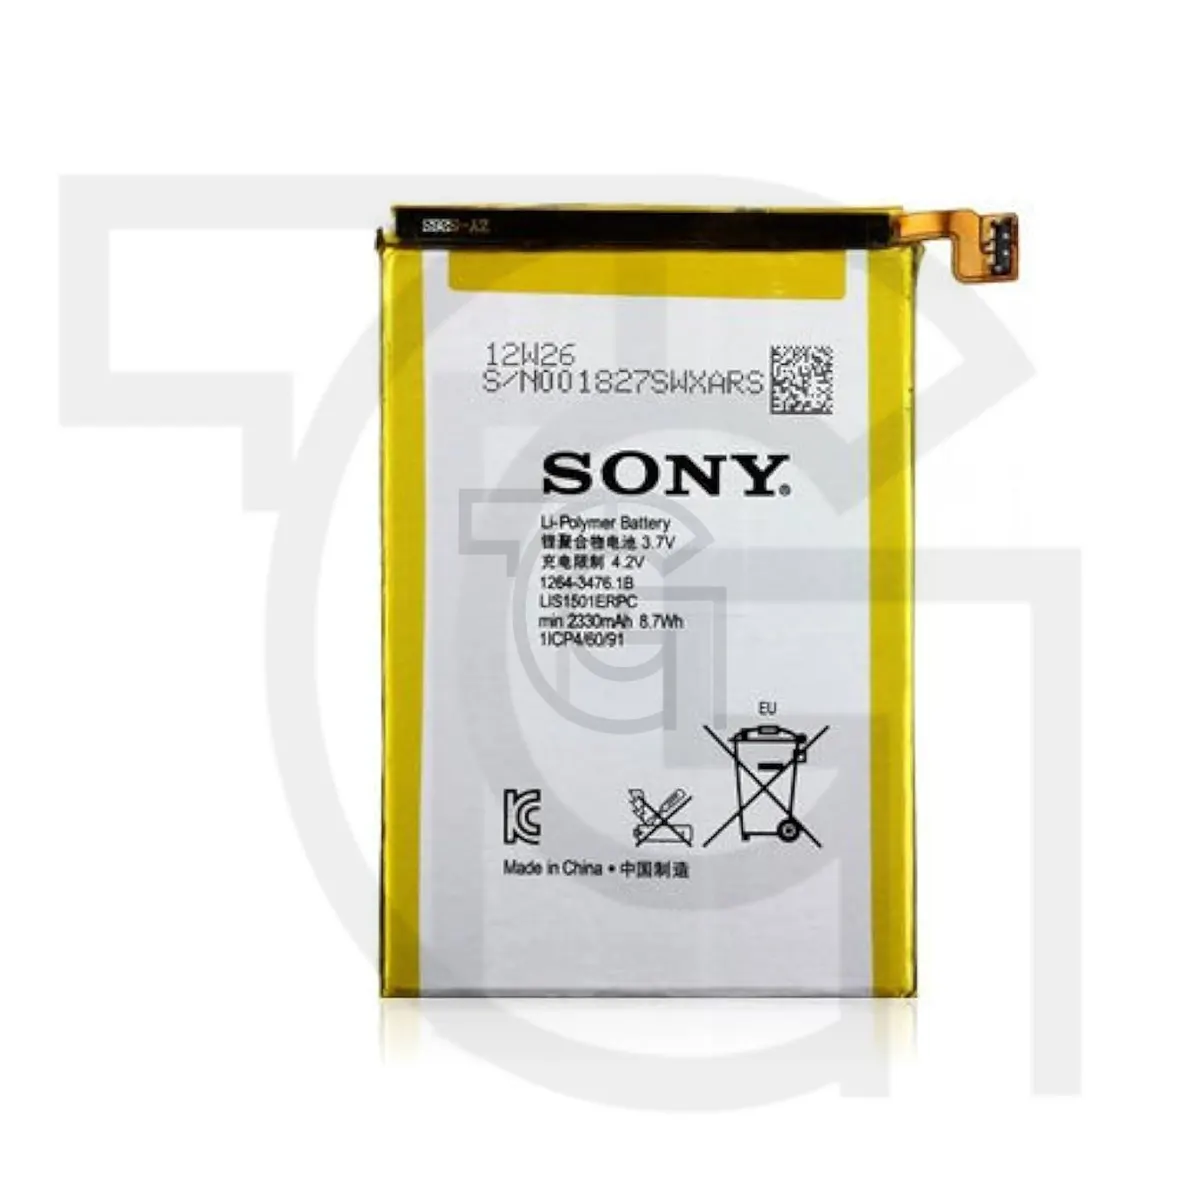 باتری سونی (Sony Xperia (LIS1501ERPC